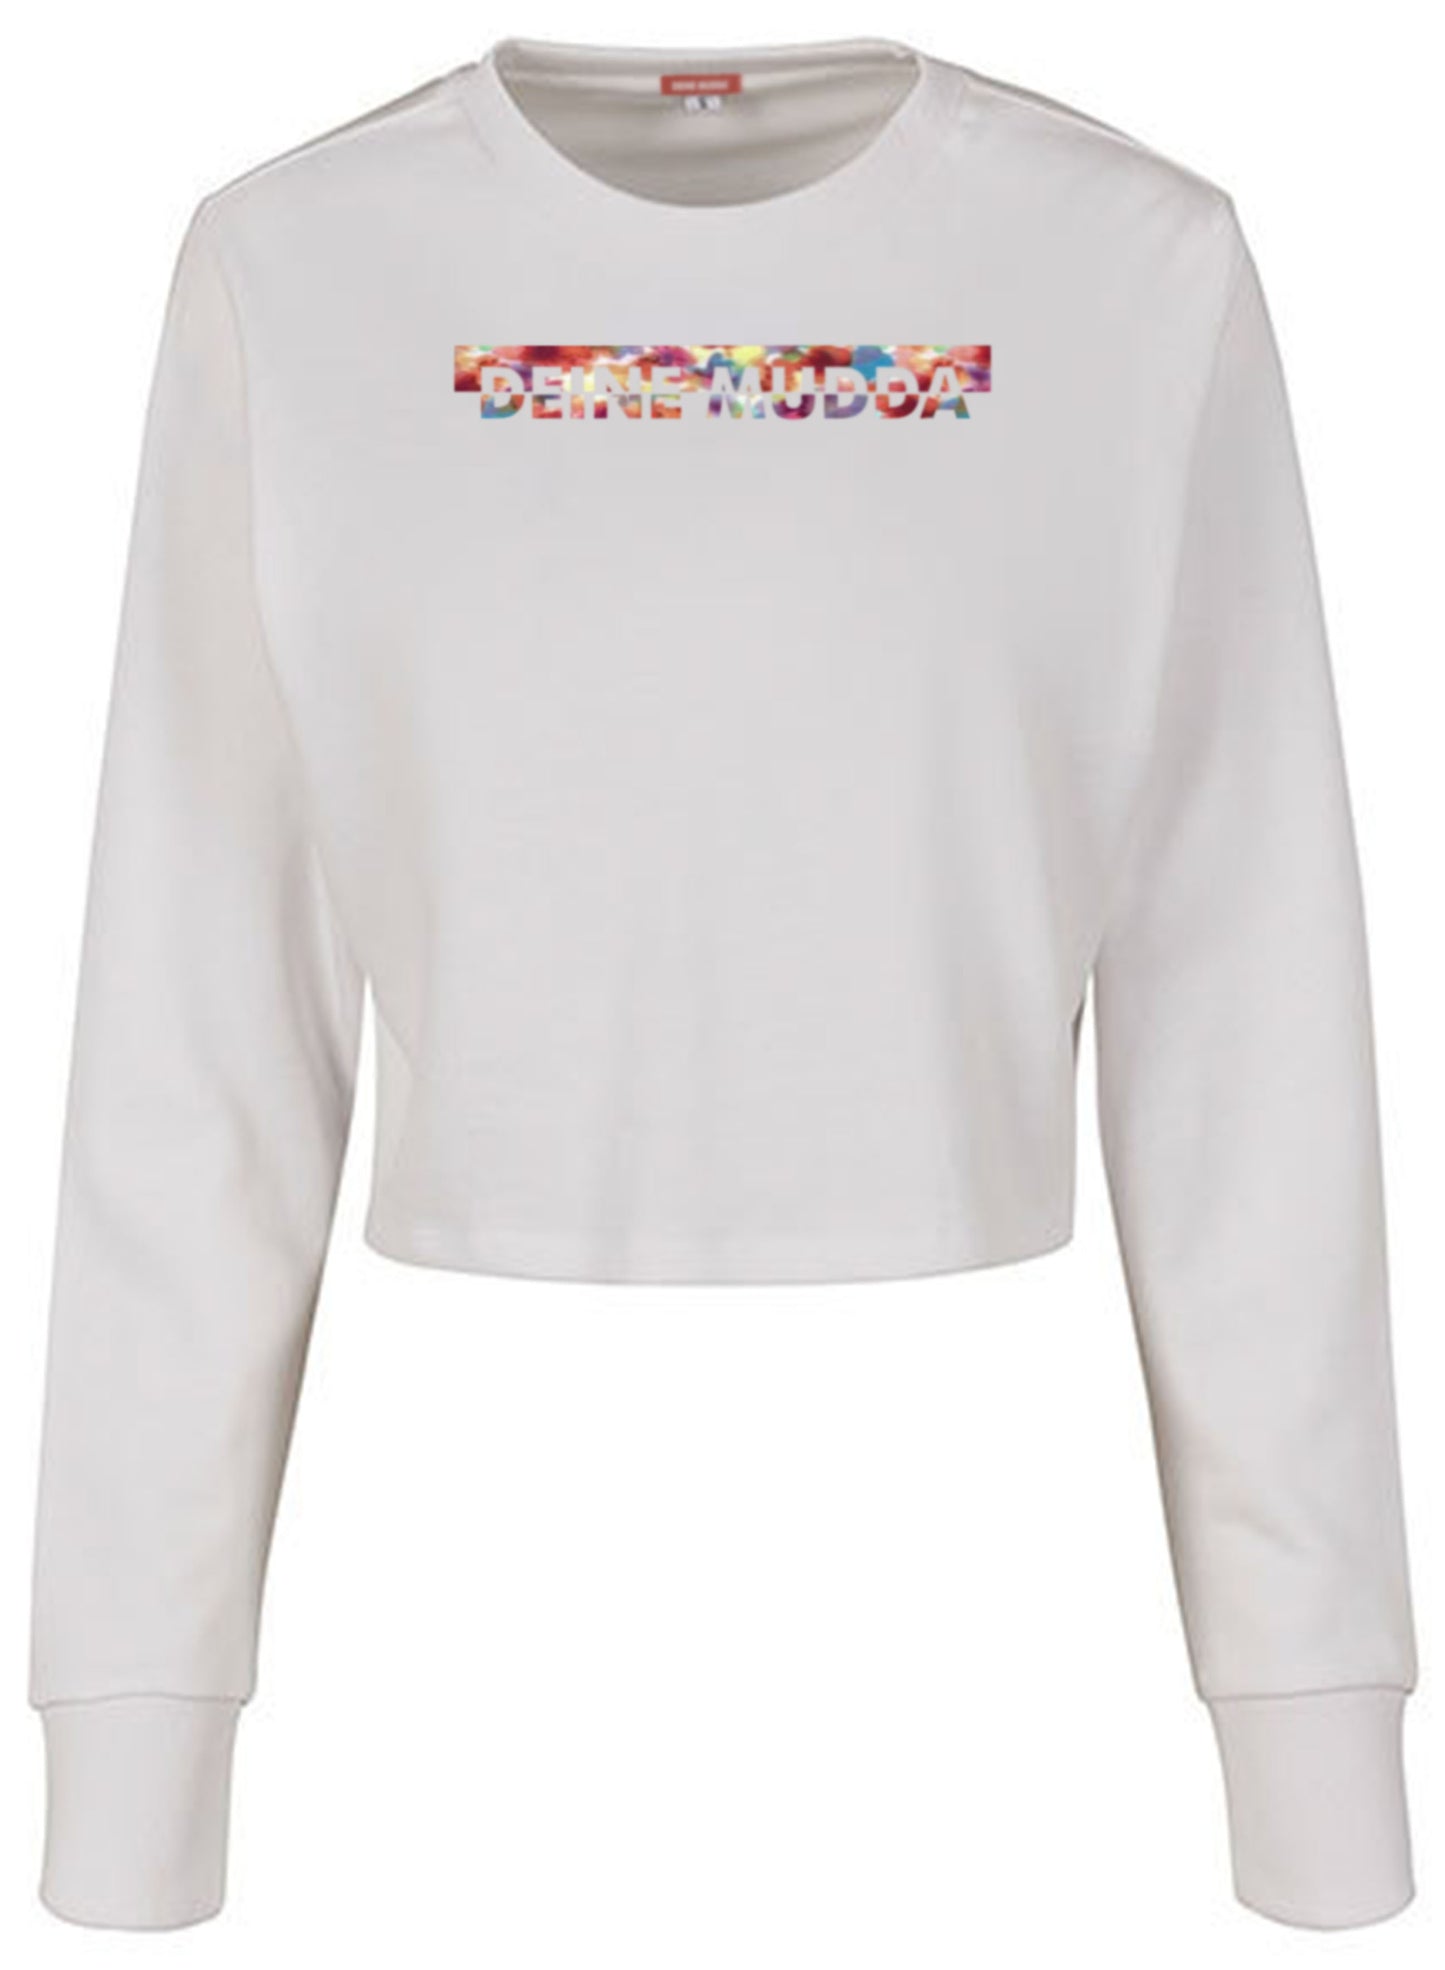 Cropped Pullover für Damen OC CUT flowers (weiß) DEINE MUDDA®